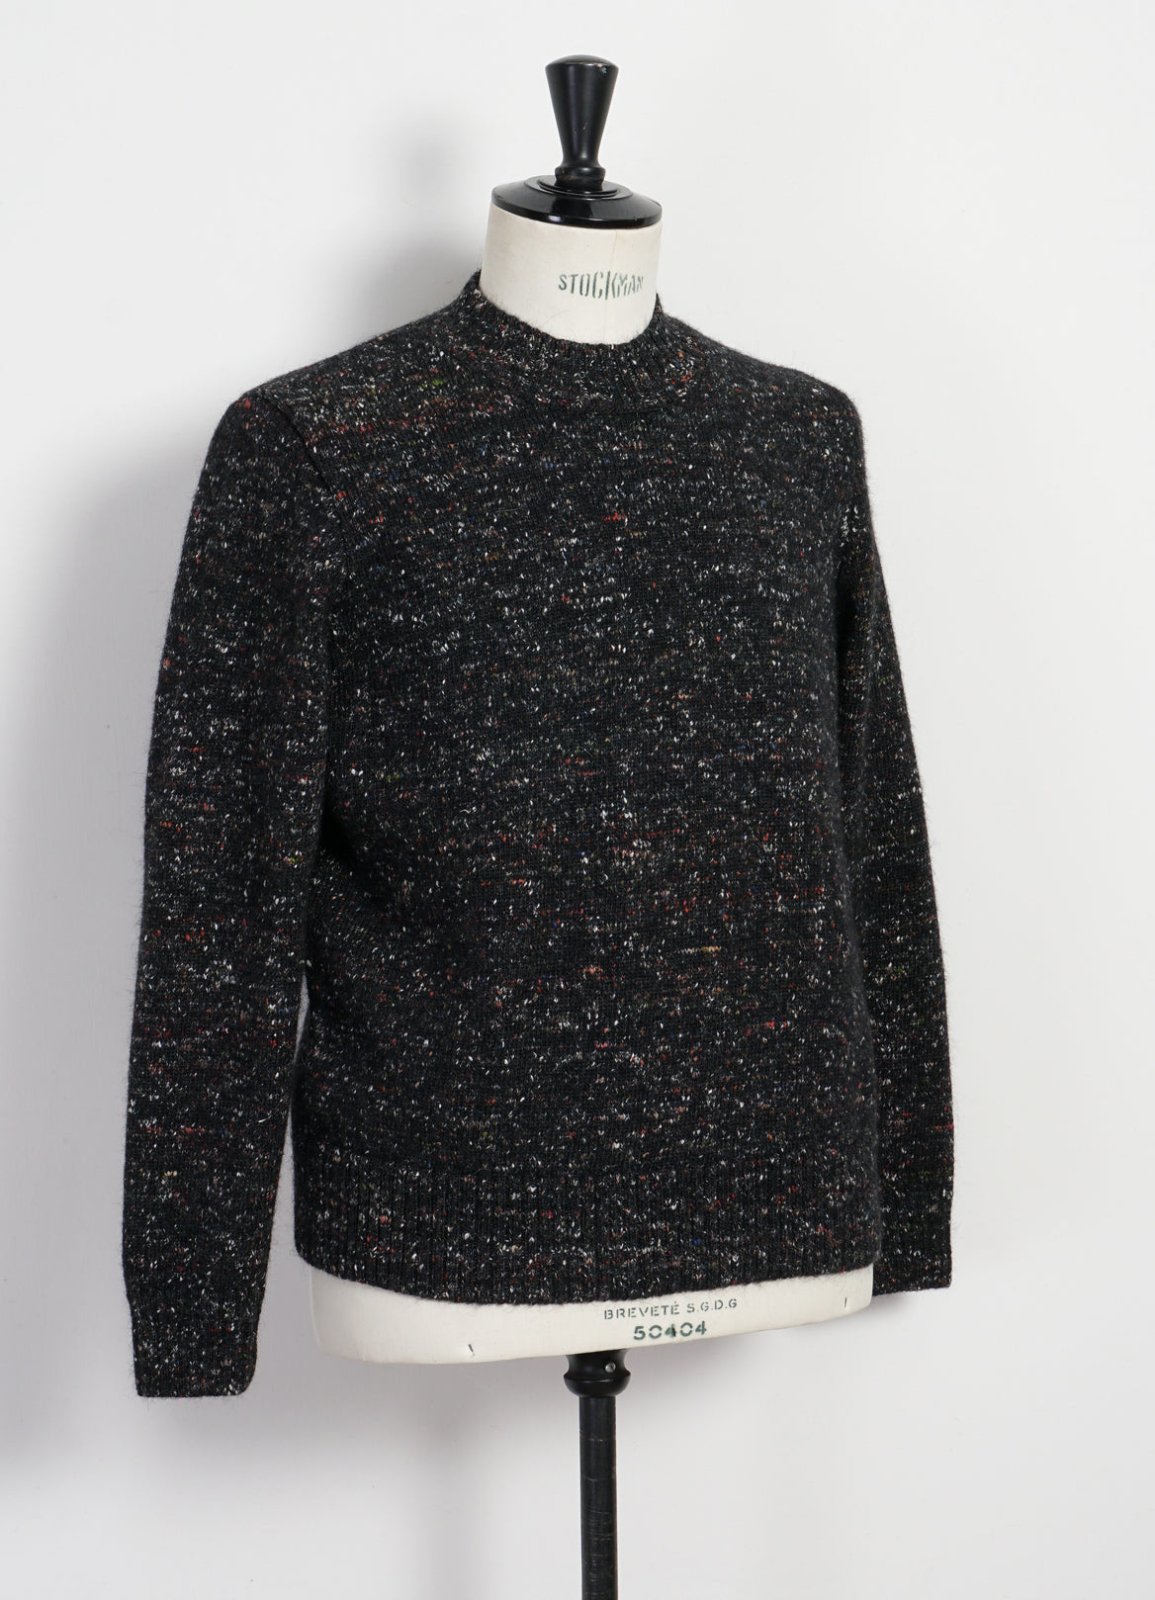 HANSEN GARMENTS - EIVIND | Crew Neck Rib Sweater | Donegal Black - HANSEN Garments